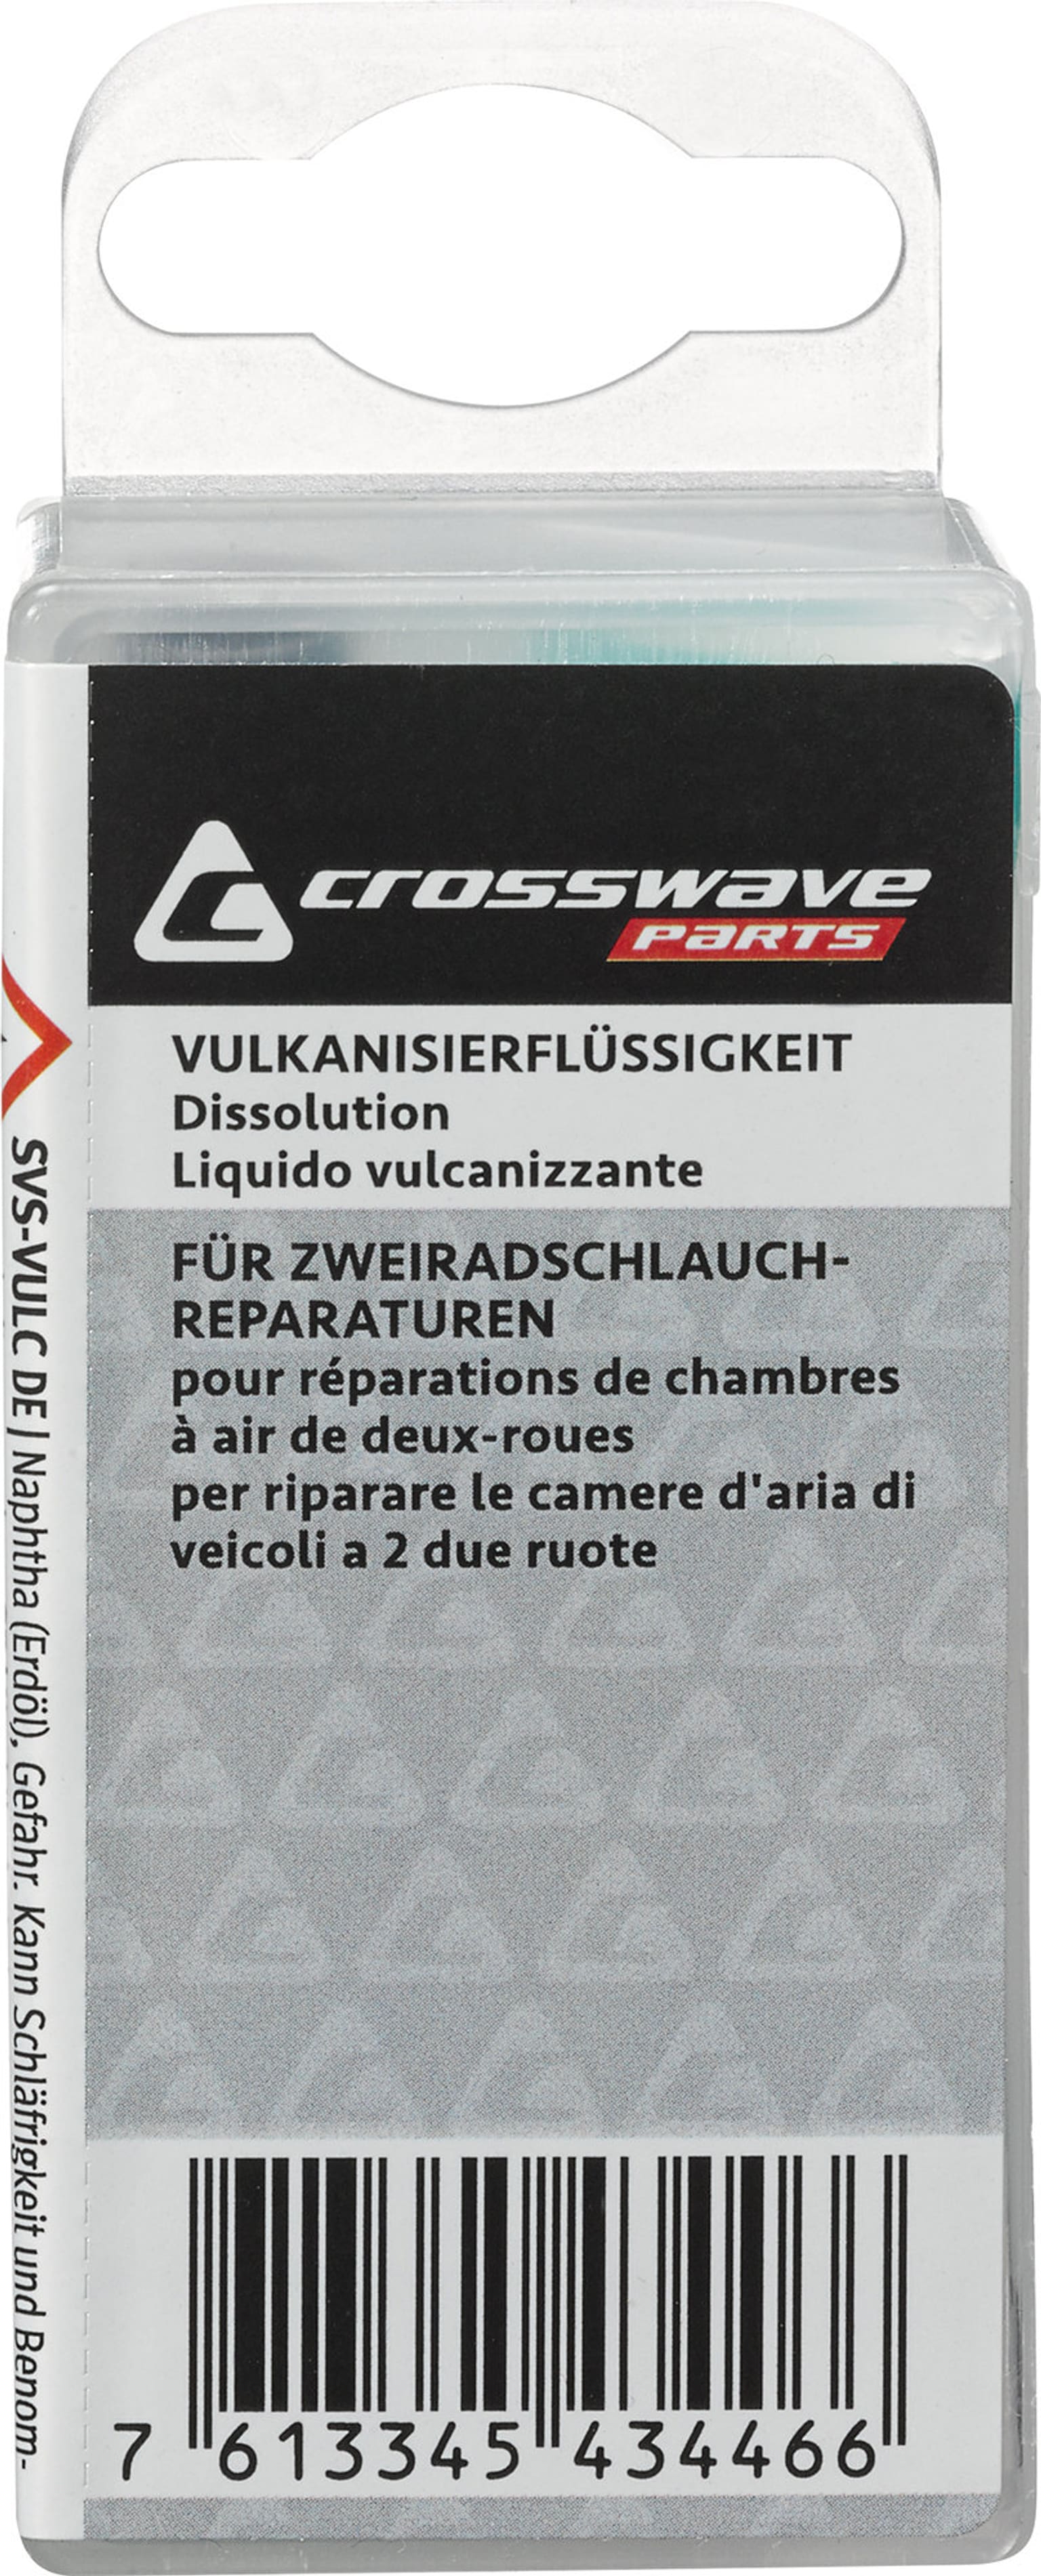 Crosswave Crosswave Vulkanisierflüssigkeit Veloflickzeug 3